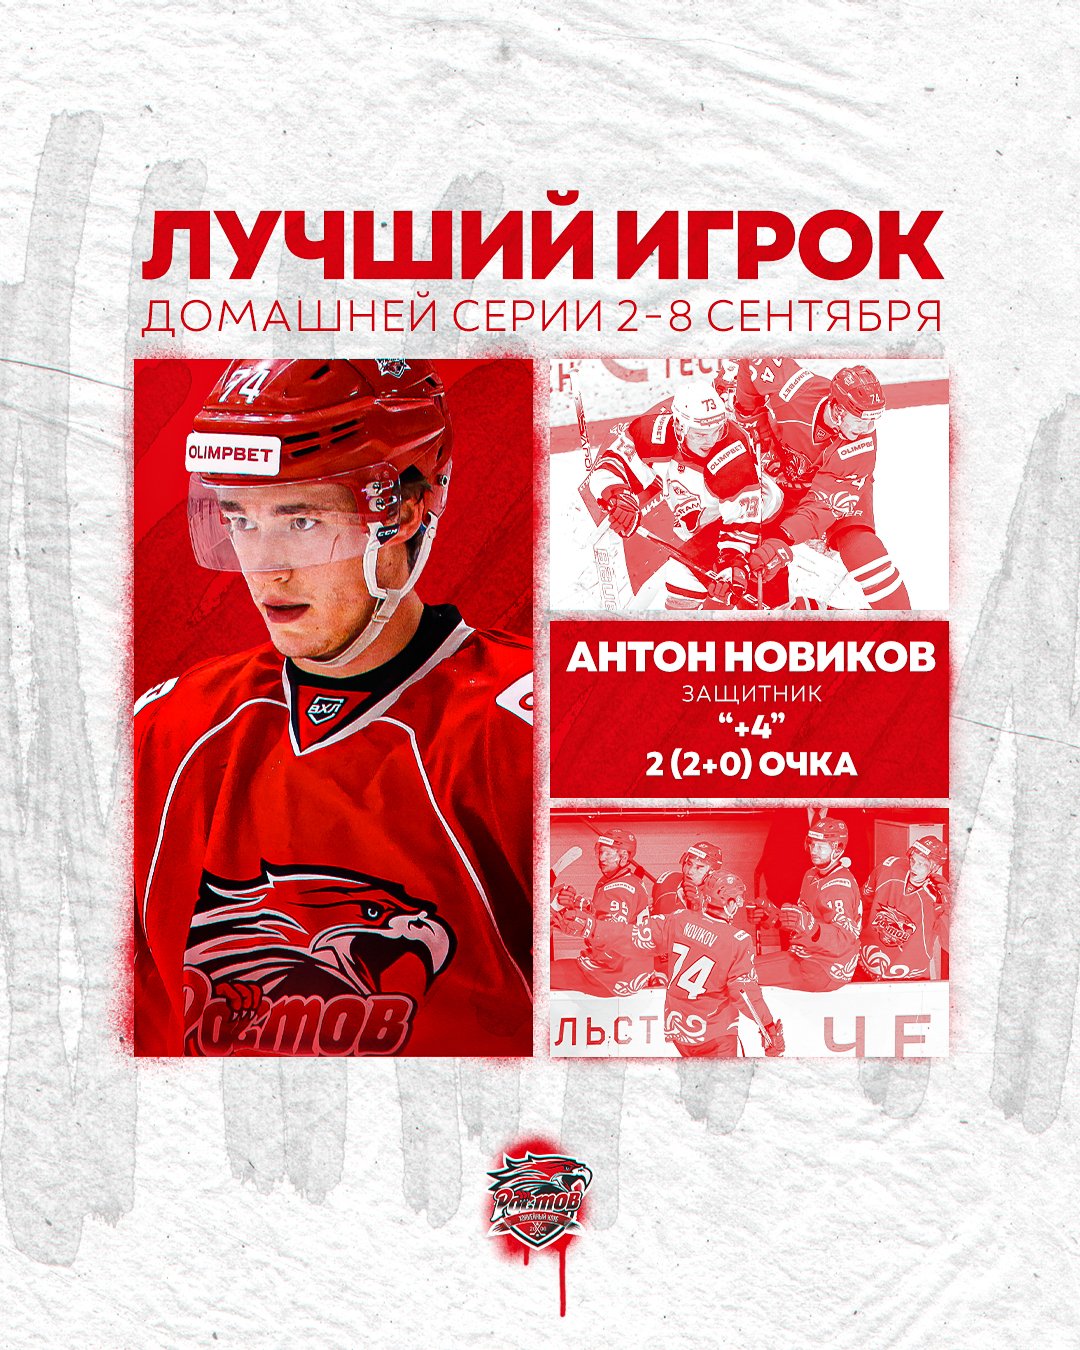 Антон Новиков - лучший игрок домашней серии